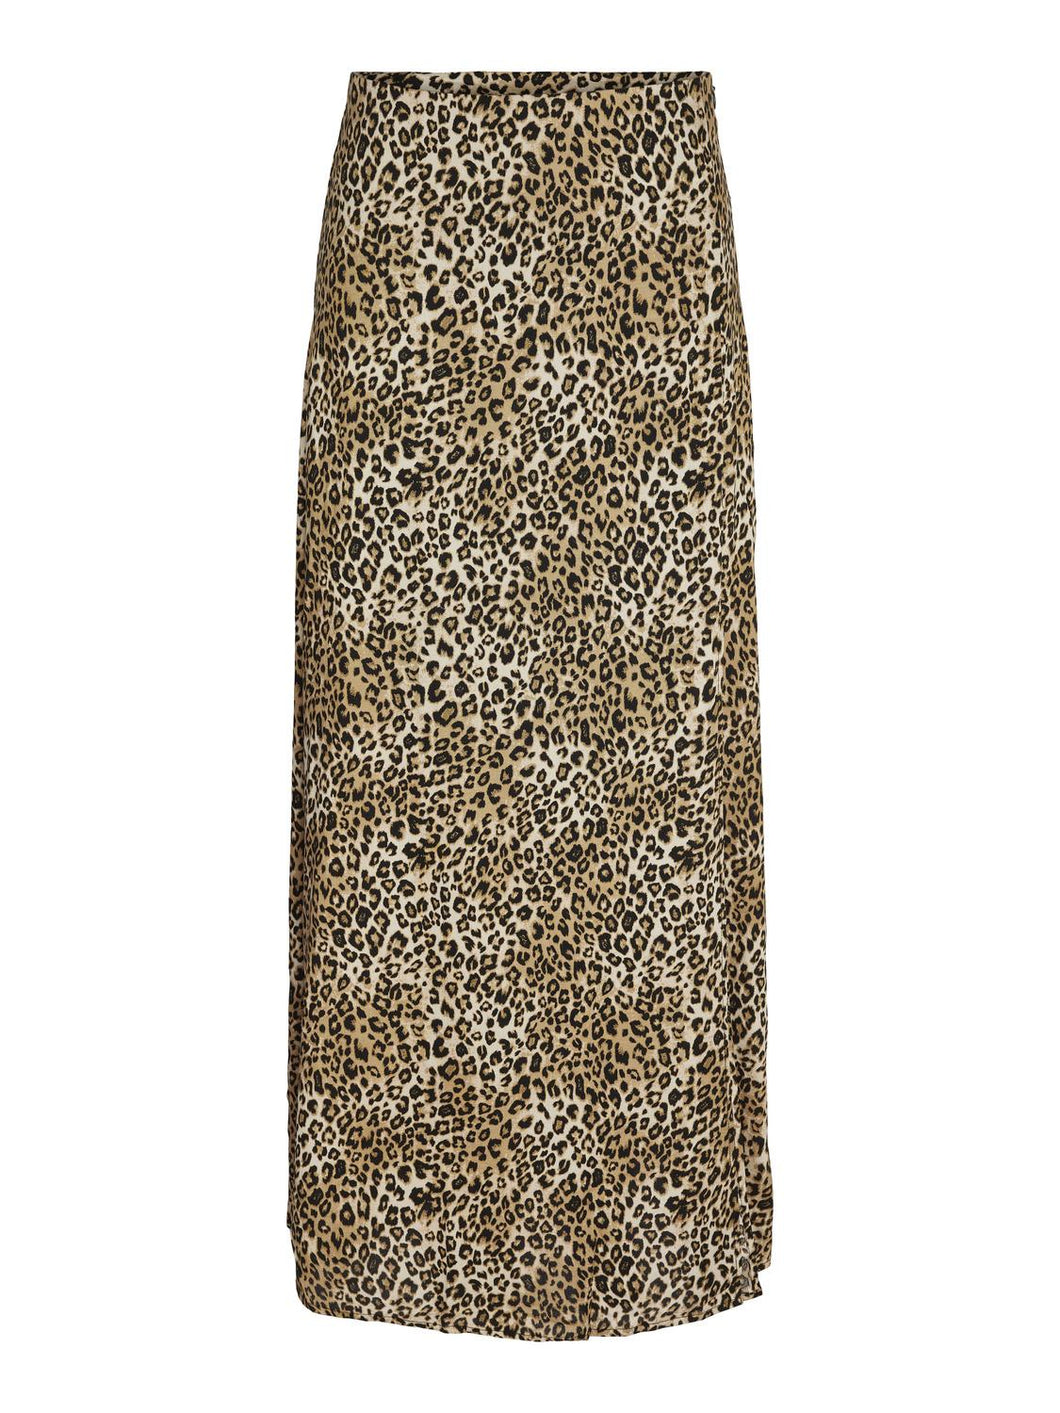 Leopard Print Maxi skirt